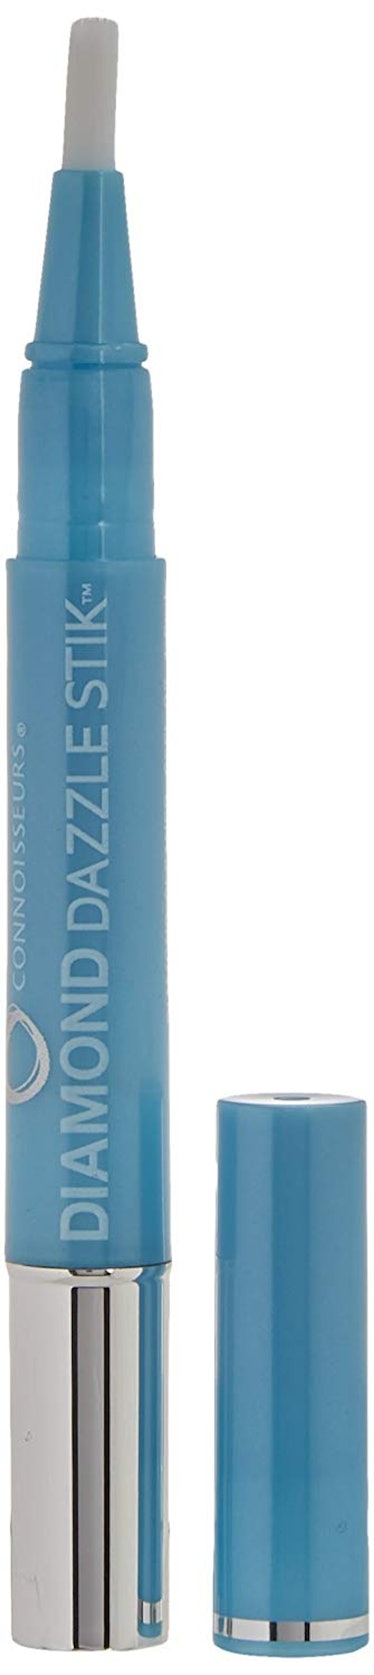 Connoisseurs Diamond Dazzle Stick